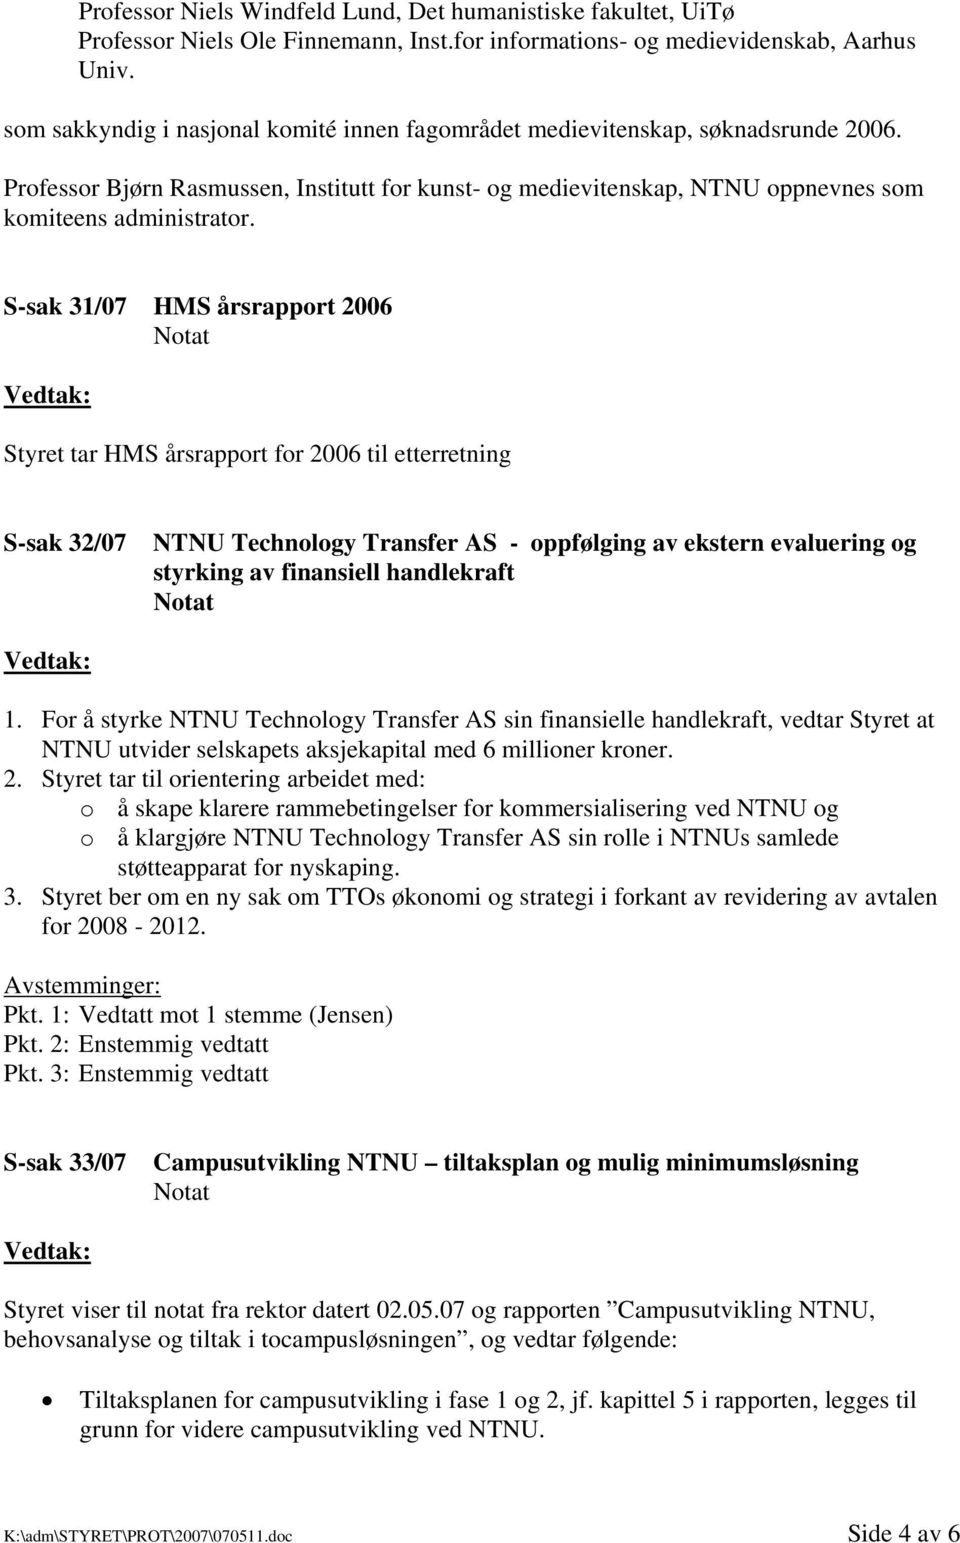 S-sak 31/07 HMS årsrapport 2006 Styret tar HMS årsrapport for 2006 til etterretning S-sak 32/07 NTNU Technology Transfer AS - oppfølging av ekstern evaluering og styrking av finansiell handlekraft 1.